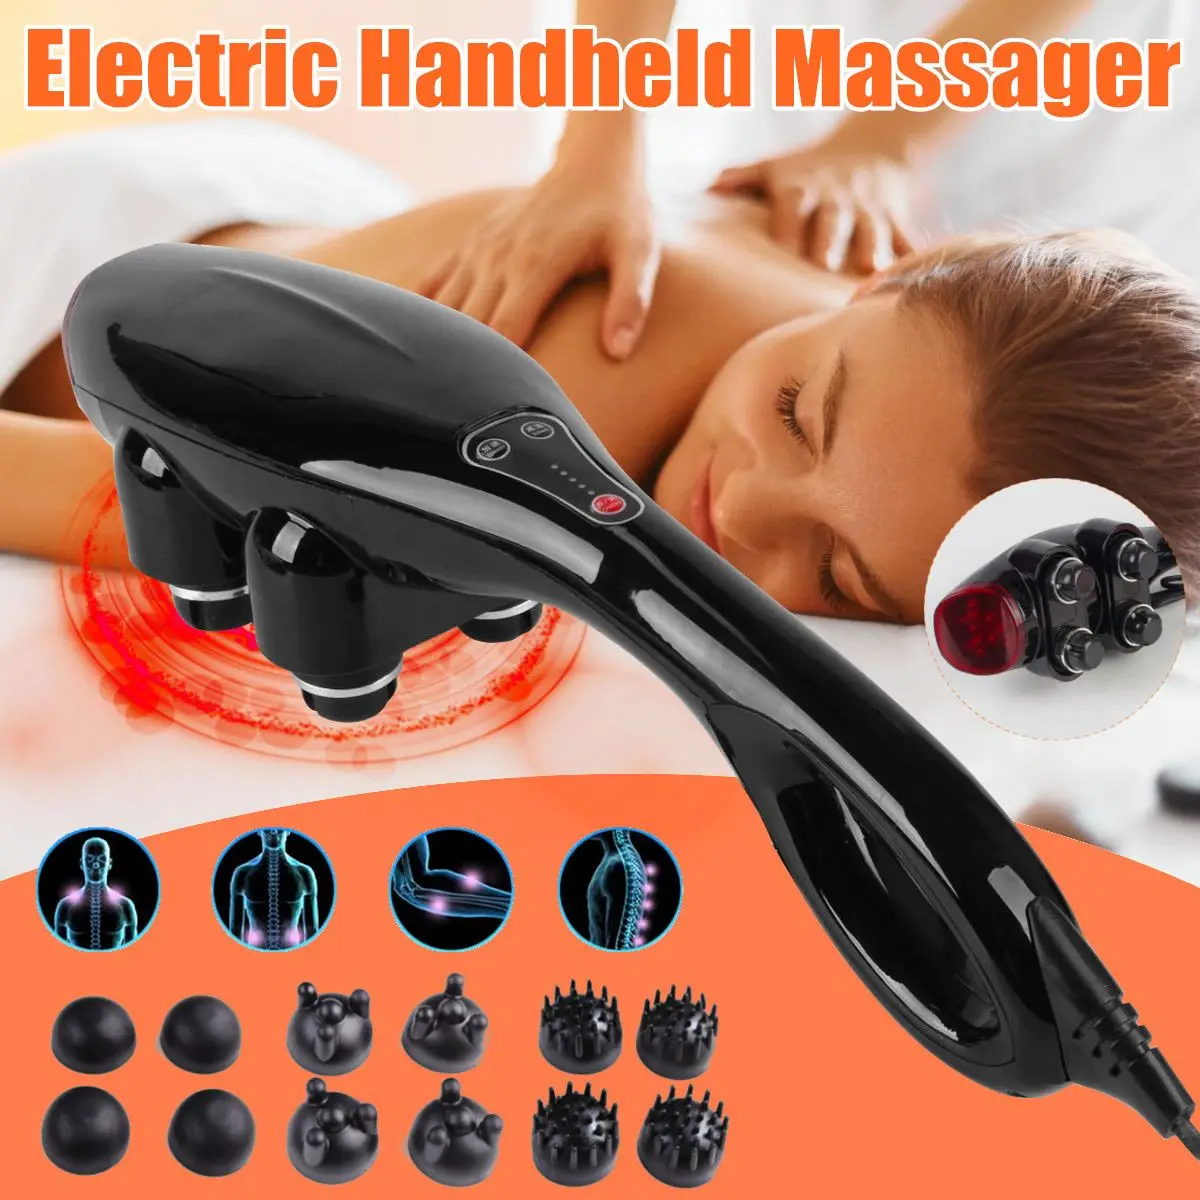 

Электрический ручной массажер, 4 головы, для всего тела, шеи, позвонков, спины, мышц, расслабляющий вибрирующий массаж глубоких тканей, забот...